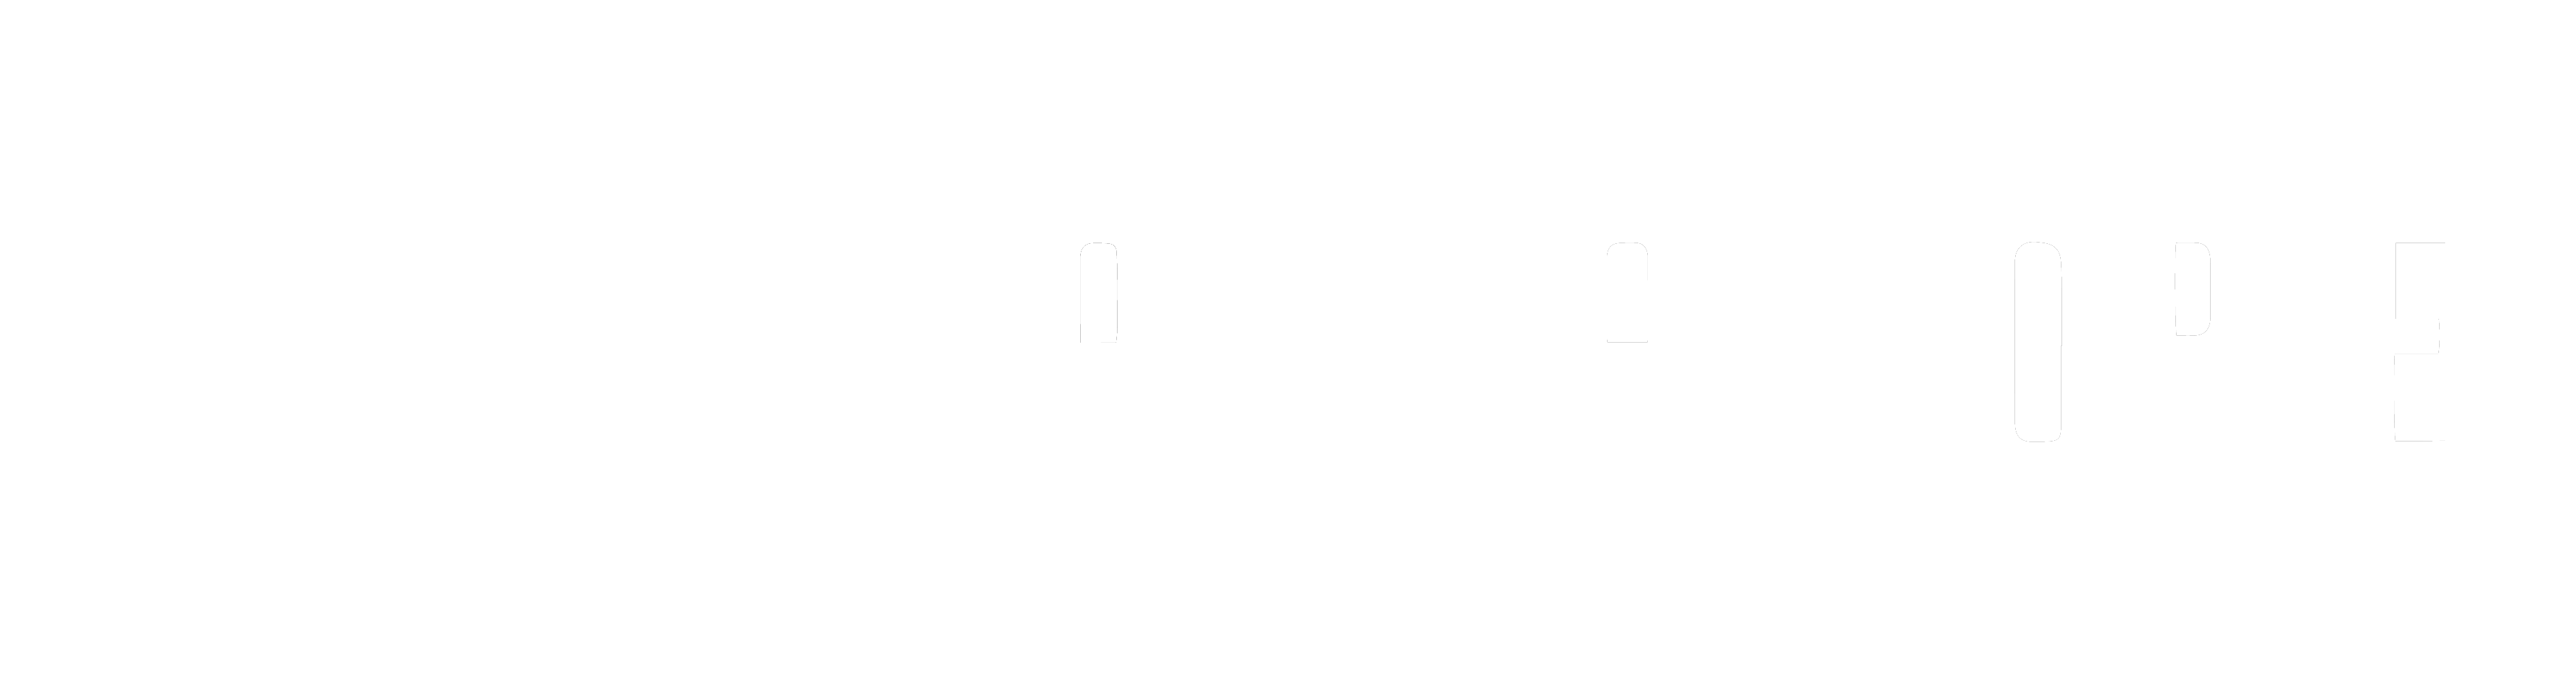 Casefactorie®